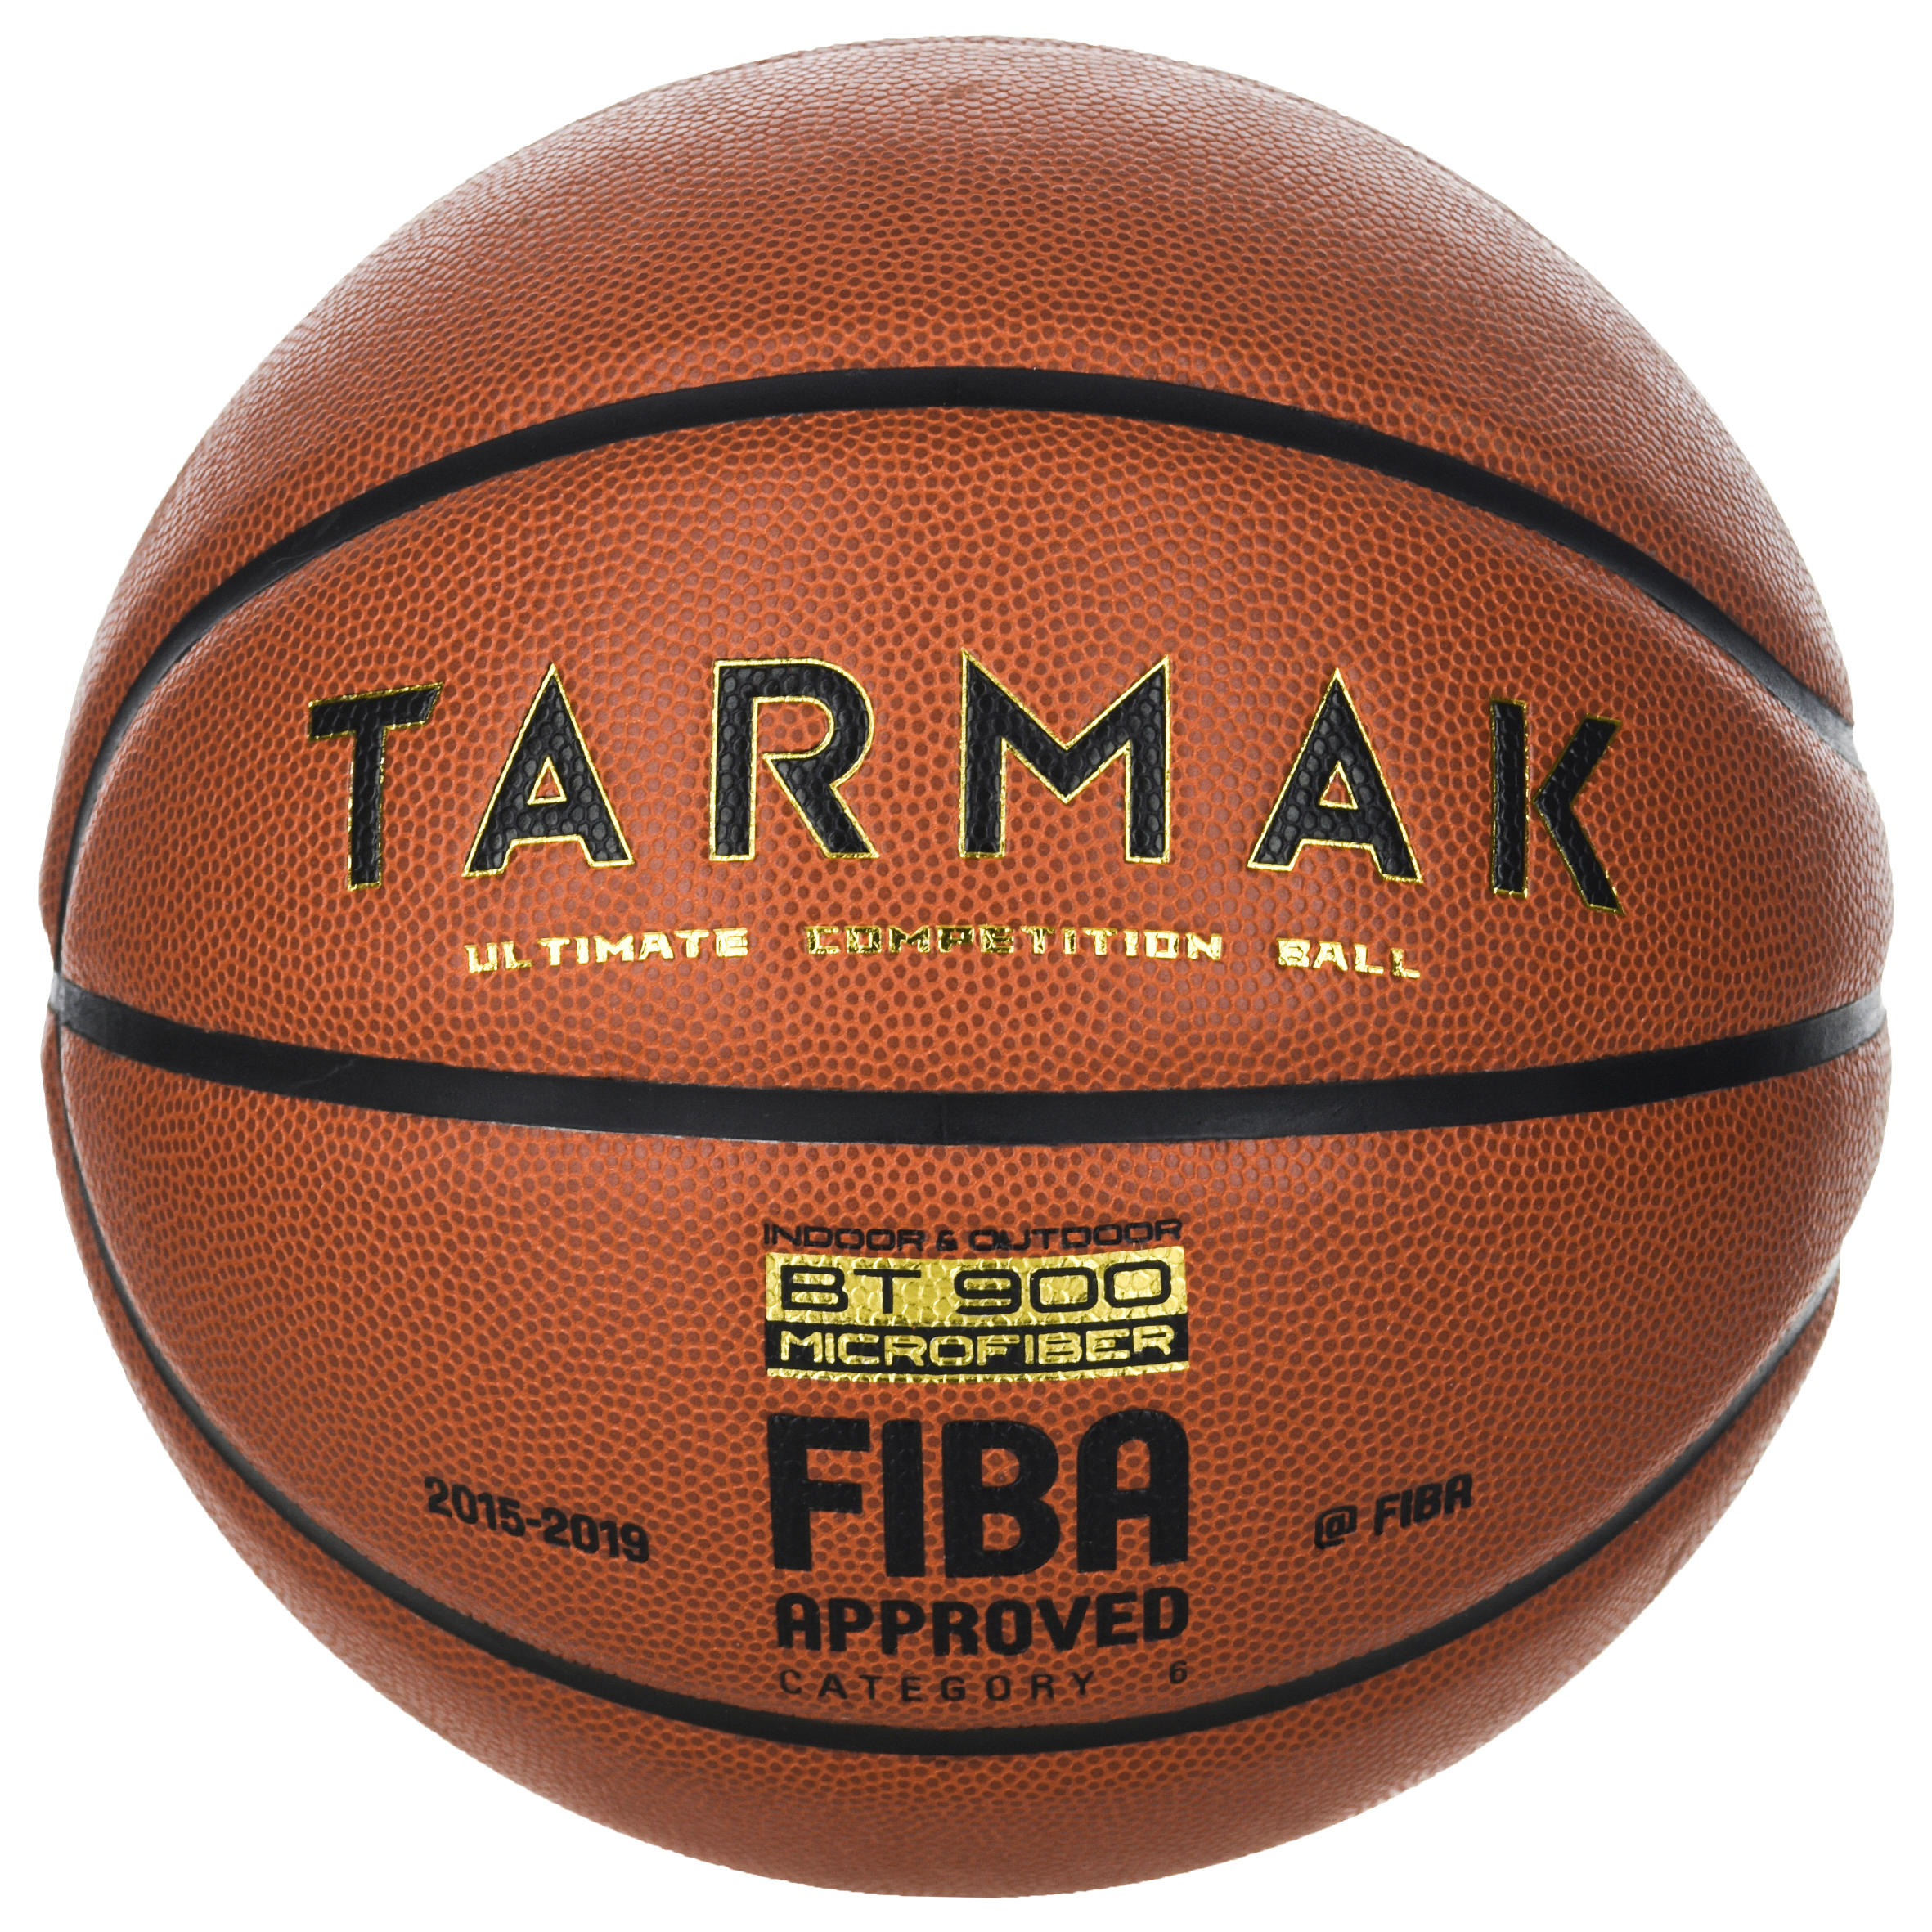 BT900 Size 6 FIBA-Certified Basketball 